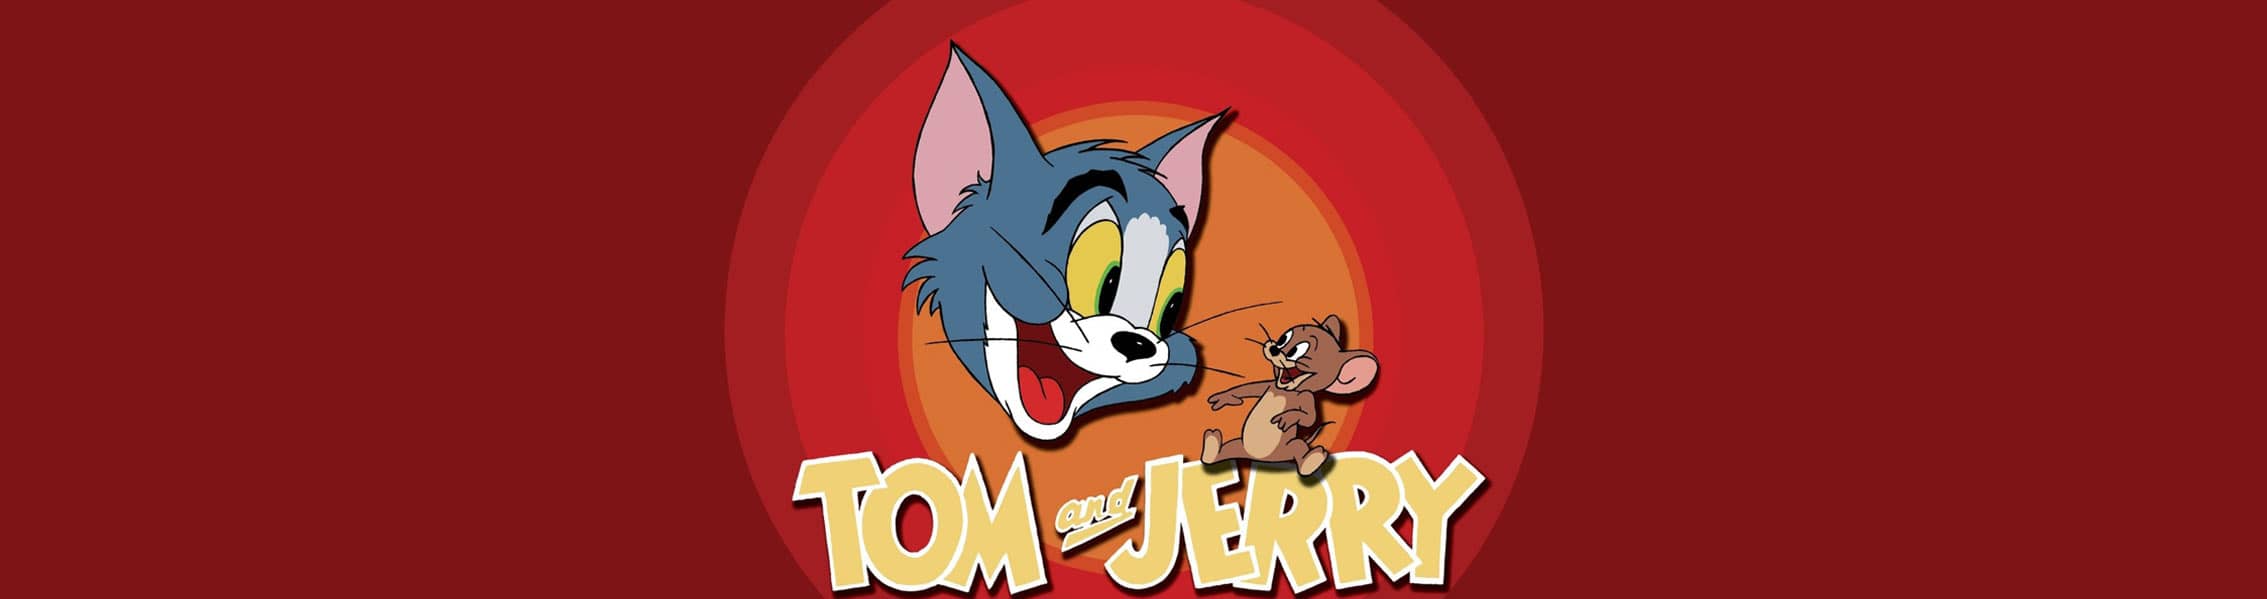 خرید محصولات تام و جری (Tom and Jerry)